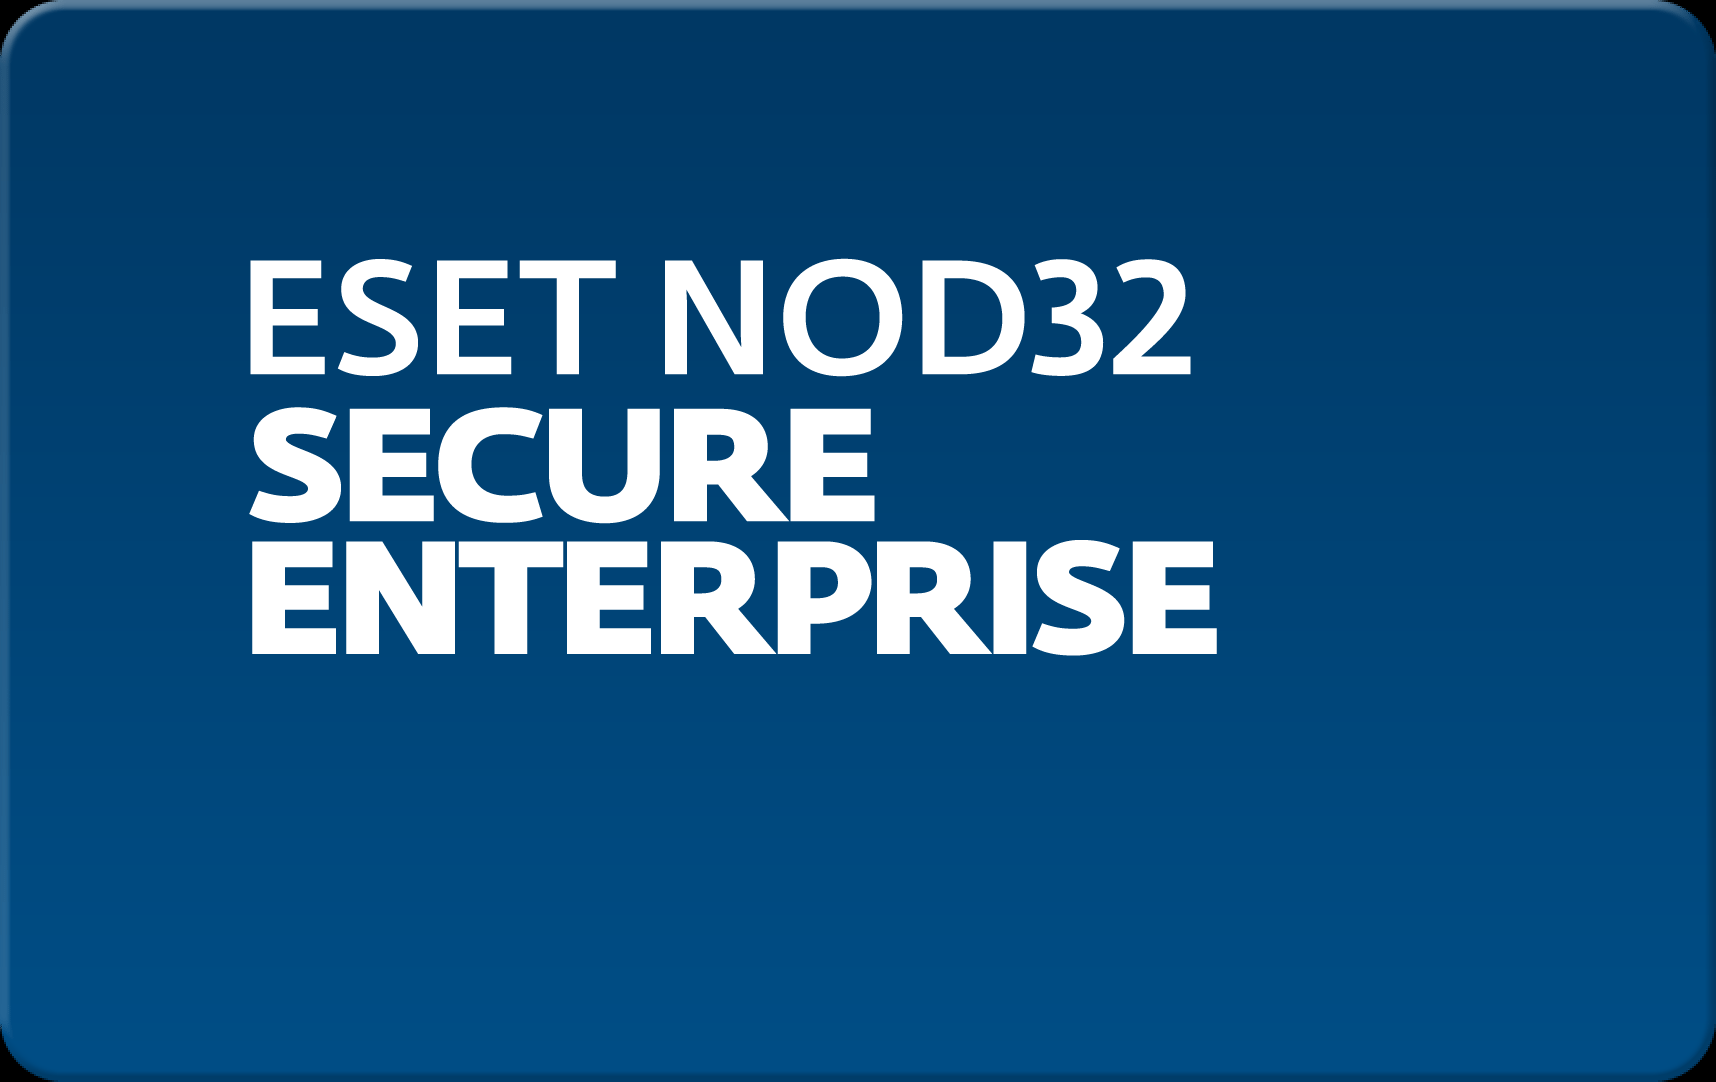        Eset NOD32 Secure Enterprise  173 